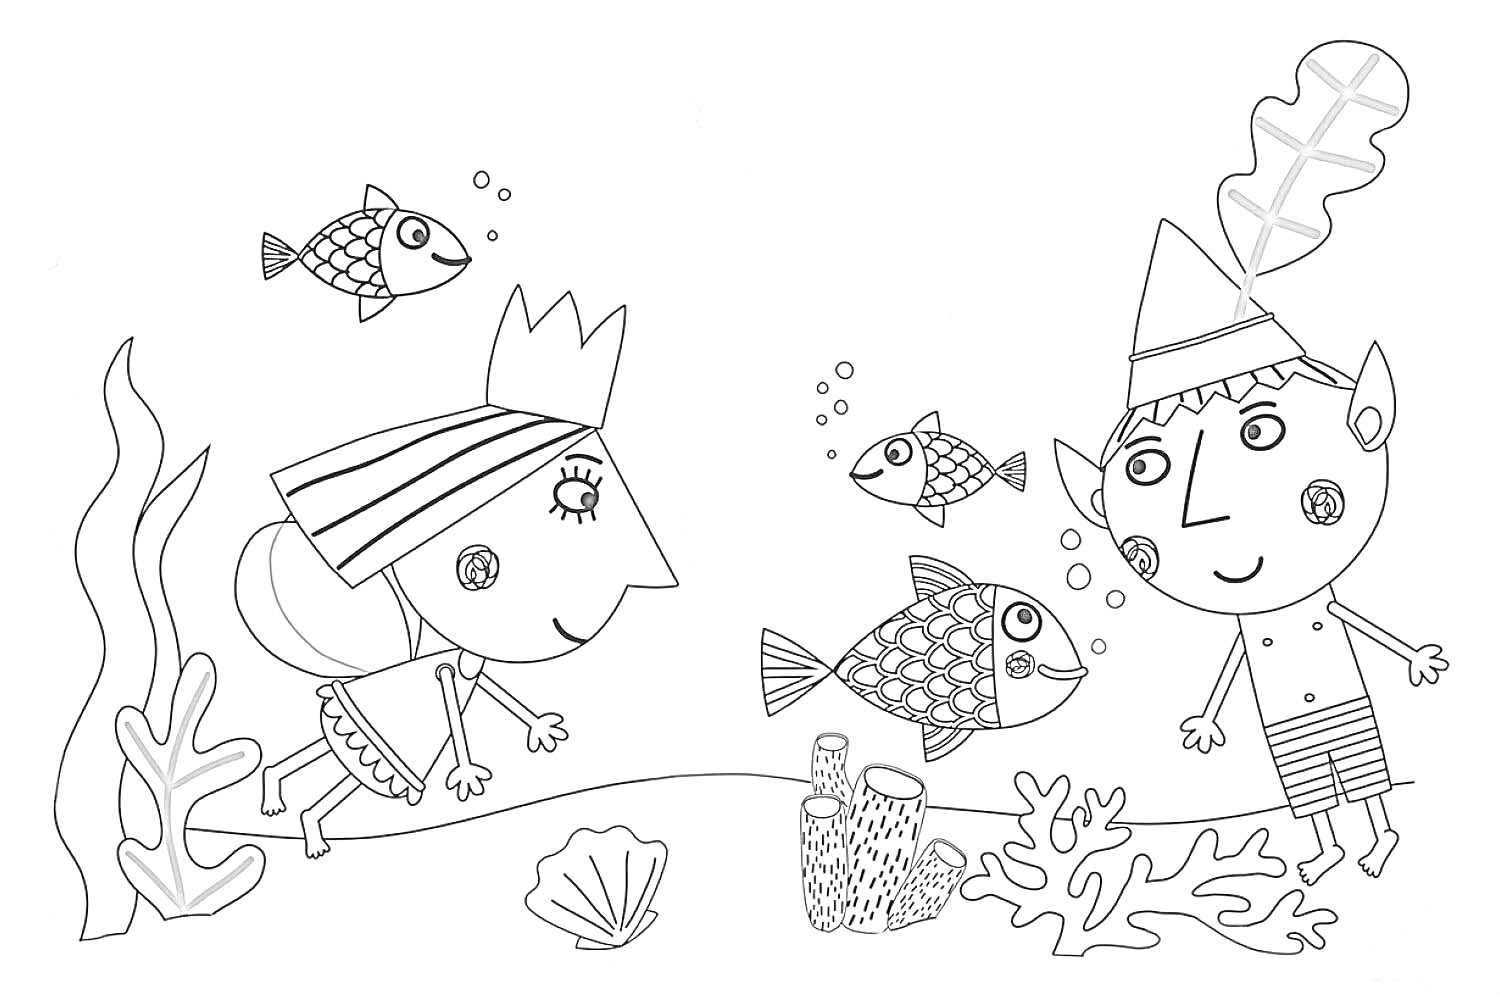 Бен и Холли под водой с тремя рыбами, ракушкой, водорослями и коралловыми рифами